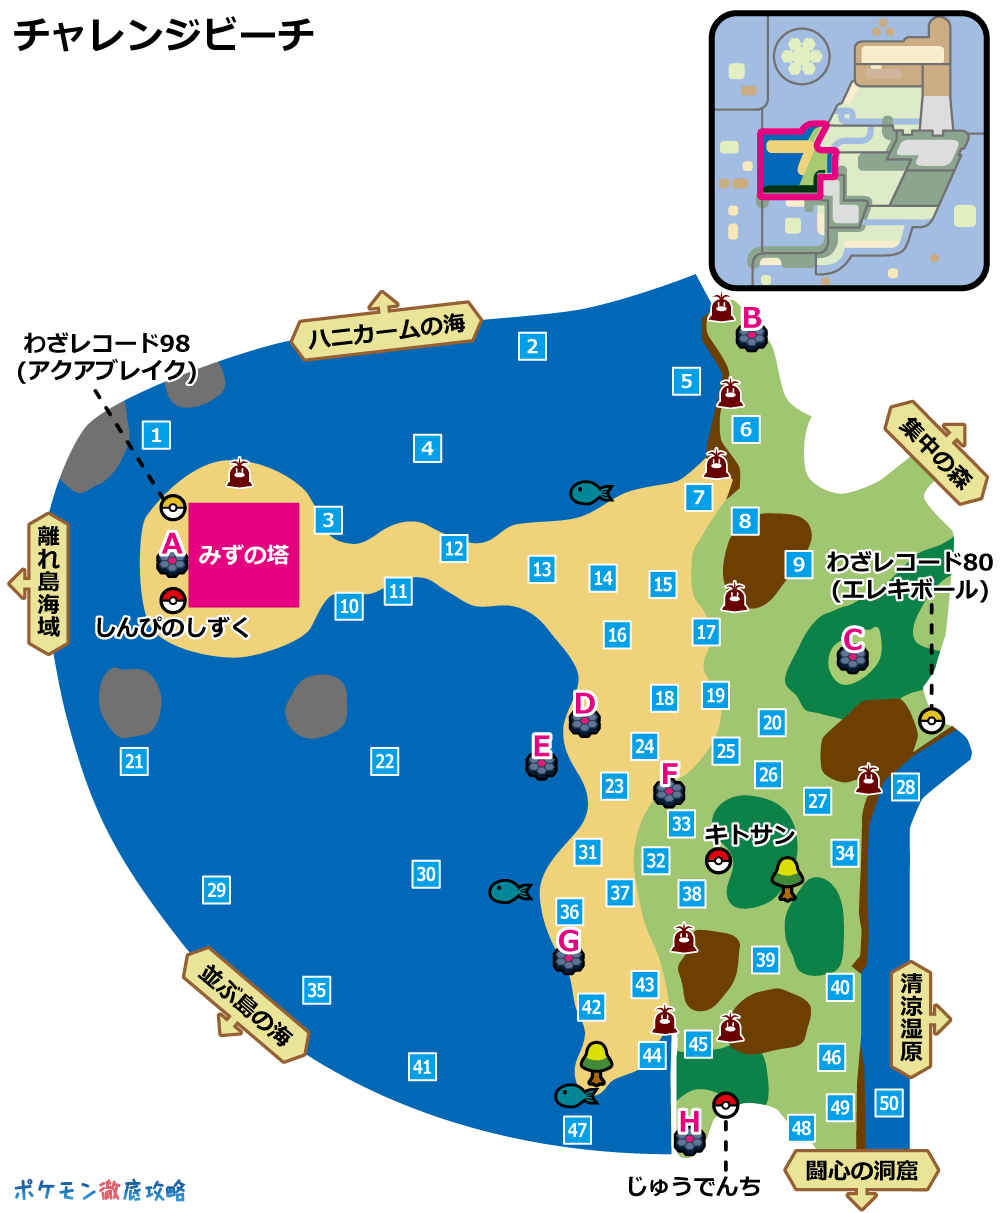 チャレンジビーチ(ヨロイ島)